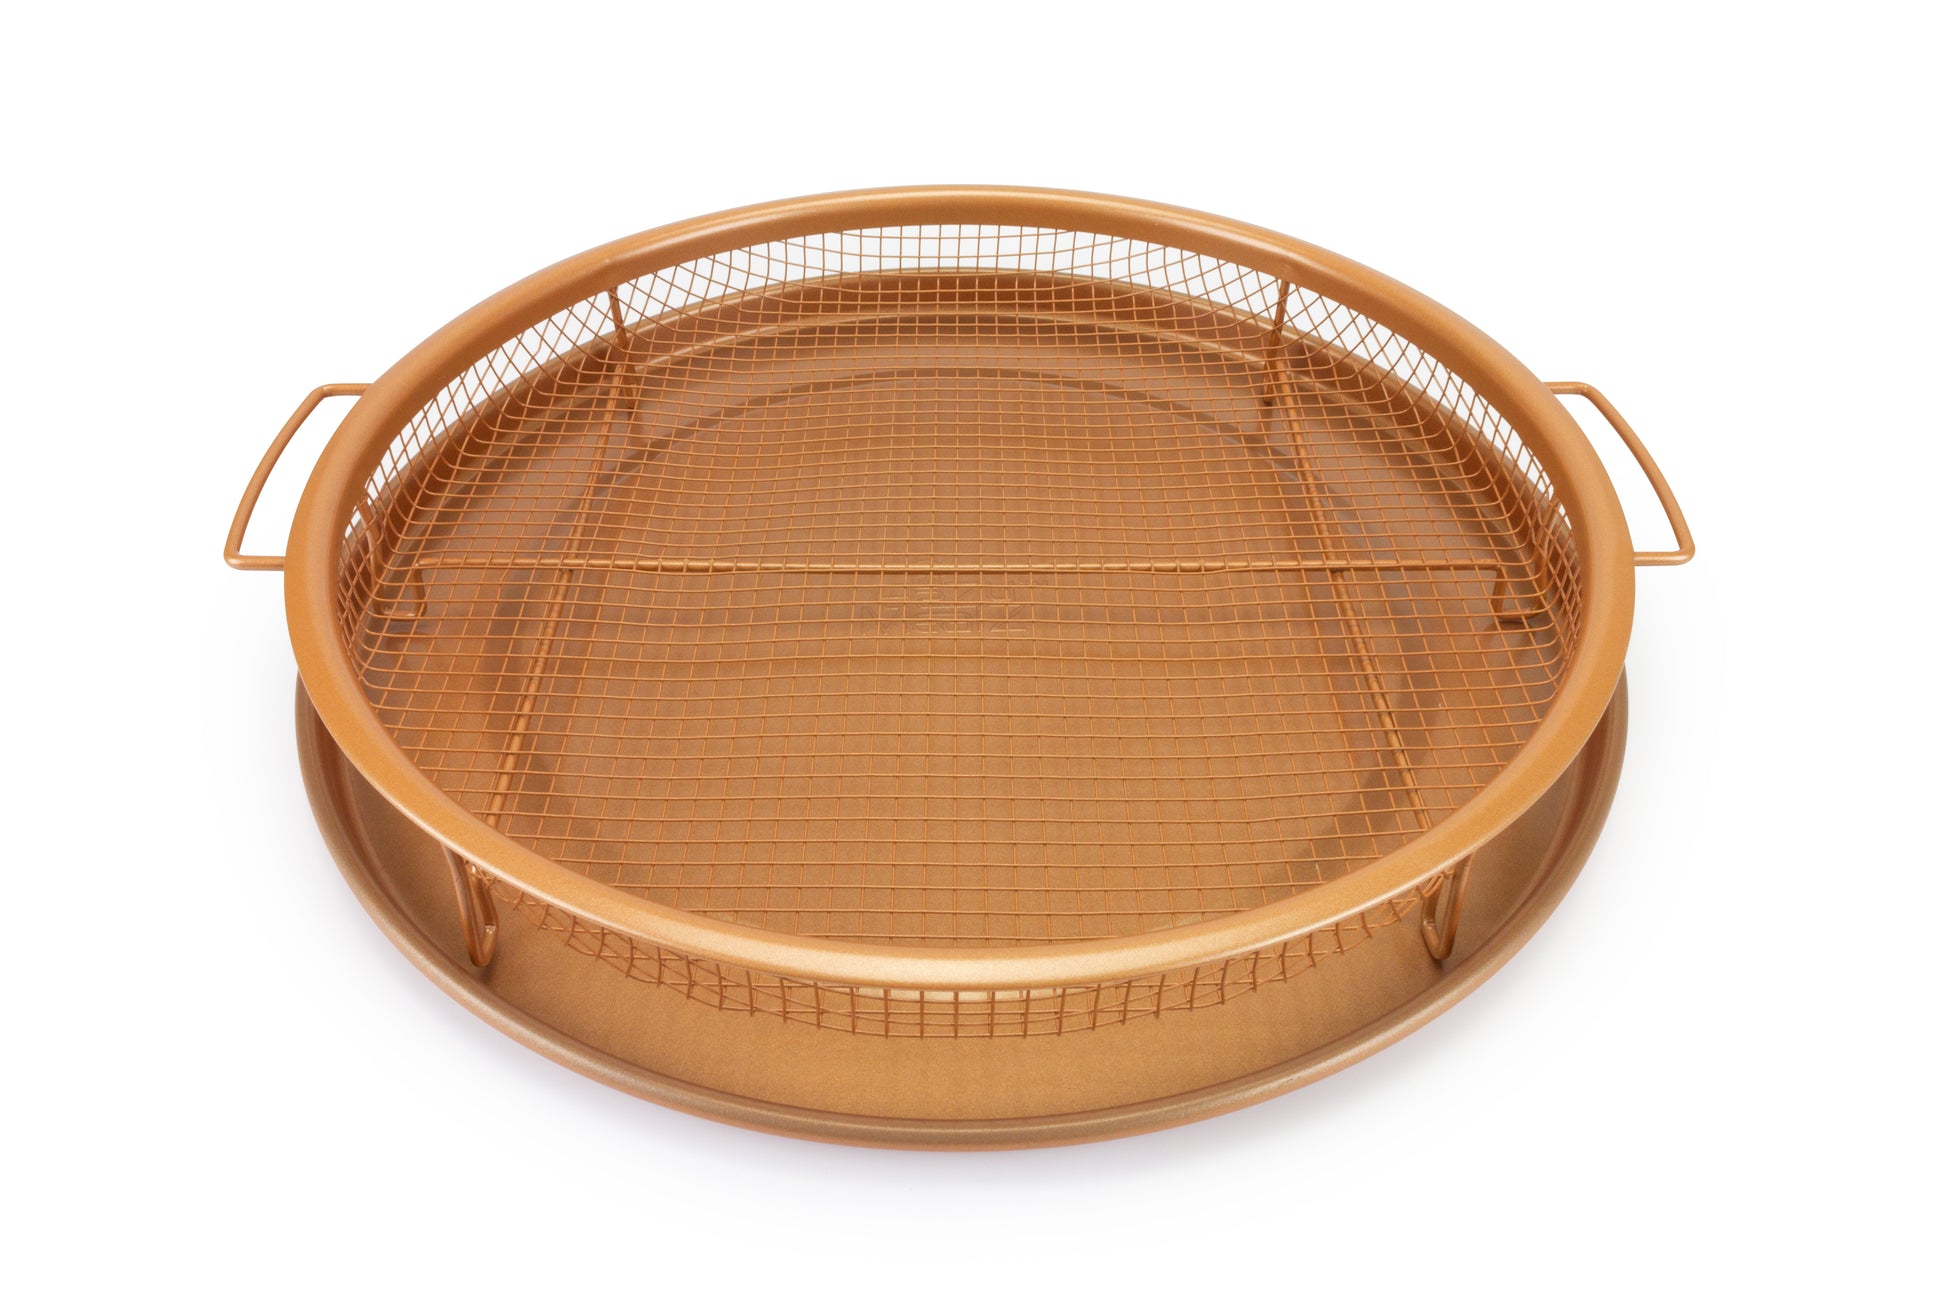 12-inch Round Copper Crisper Tray, 2-Piece Set